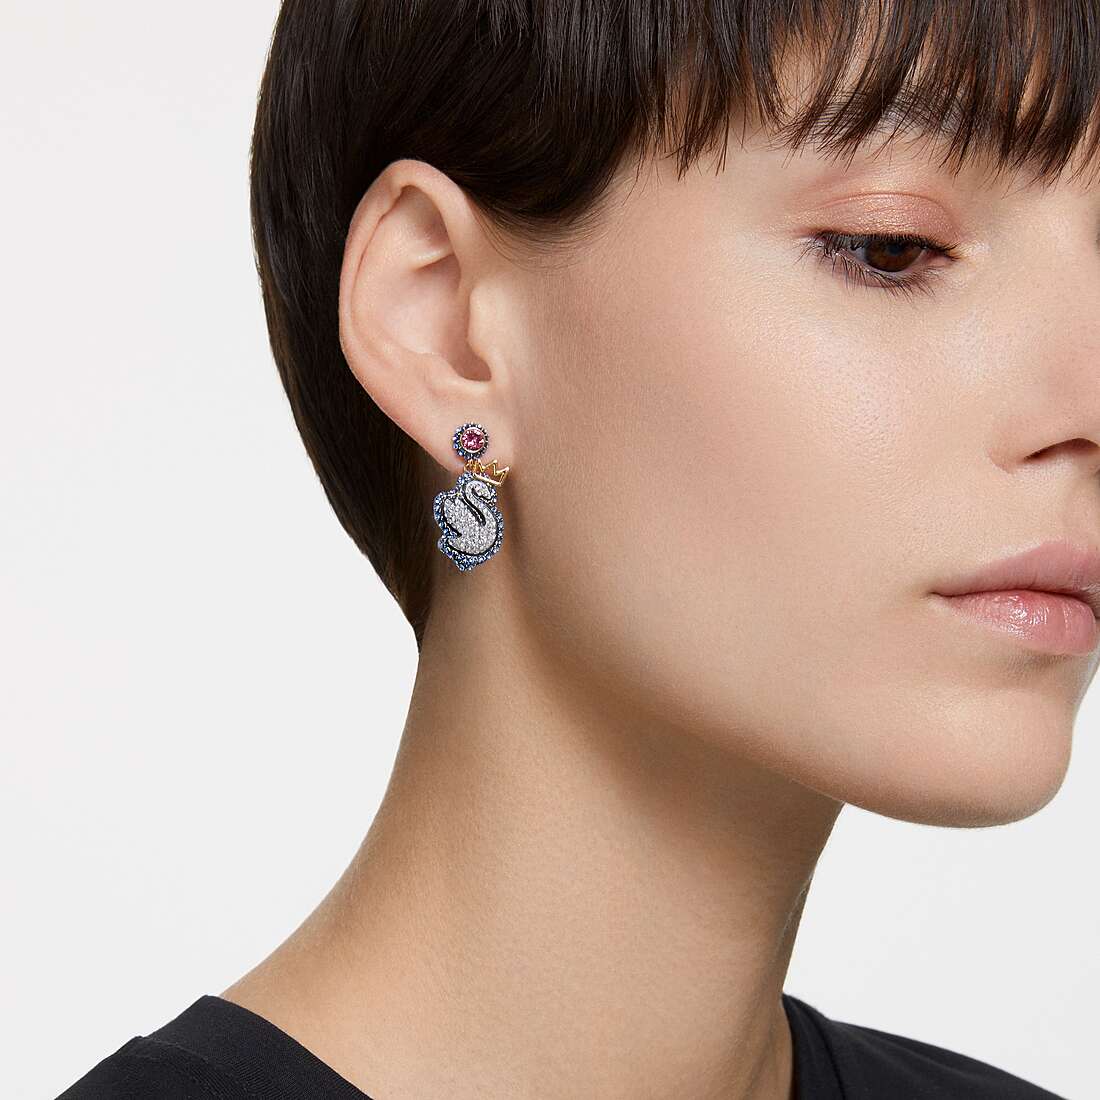 Swarovski earrings woman 5649196 photo wearing